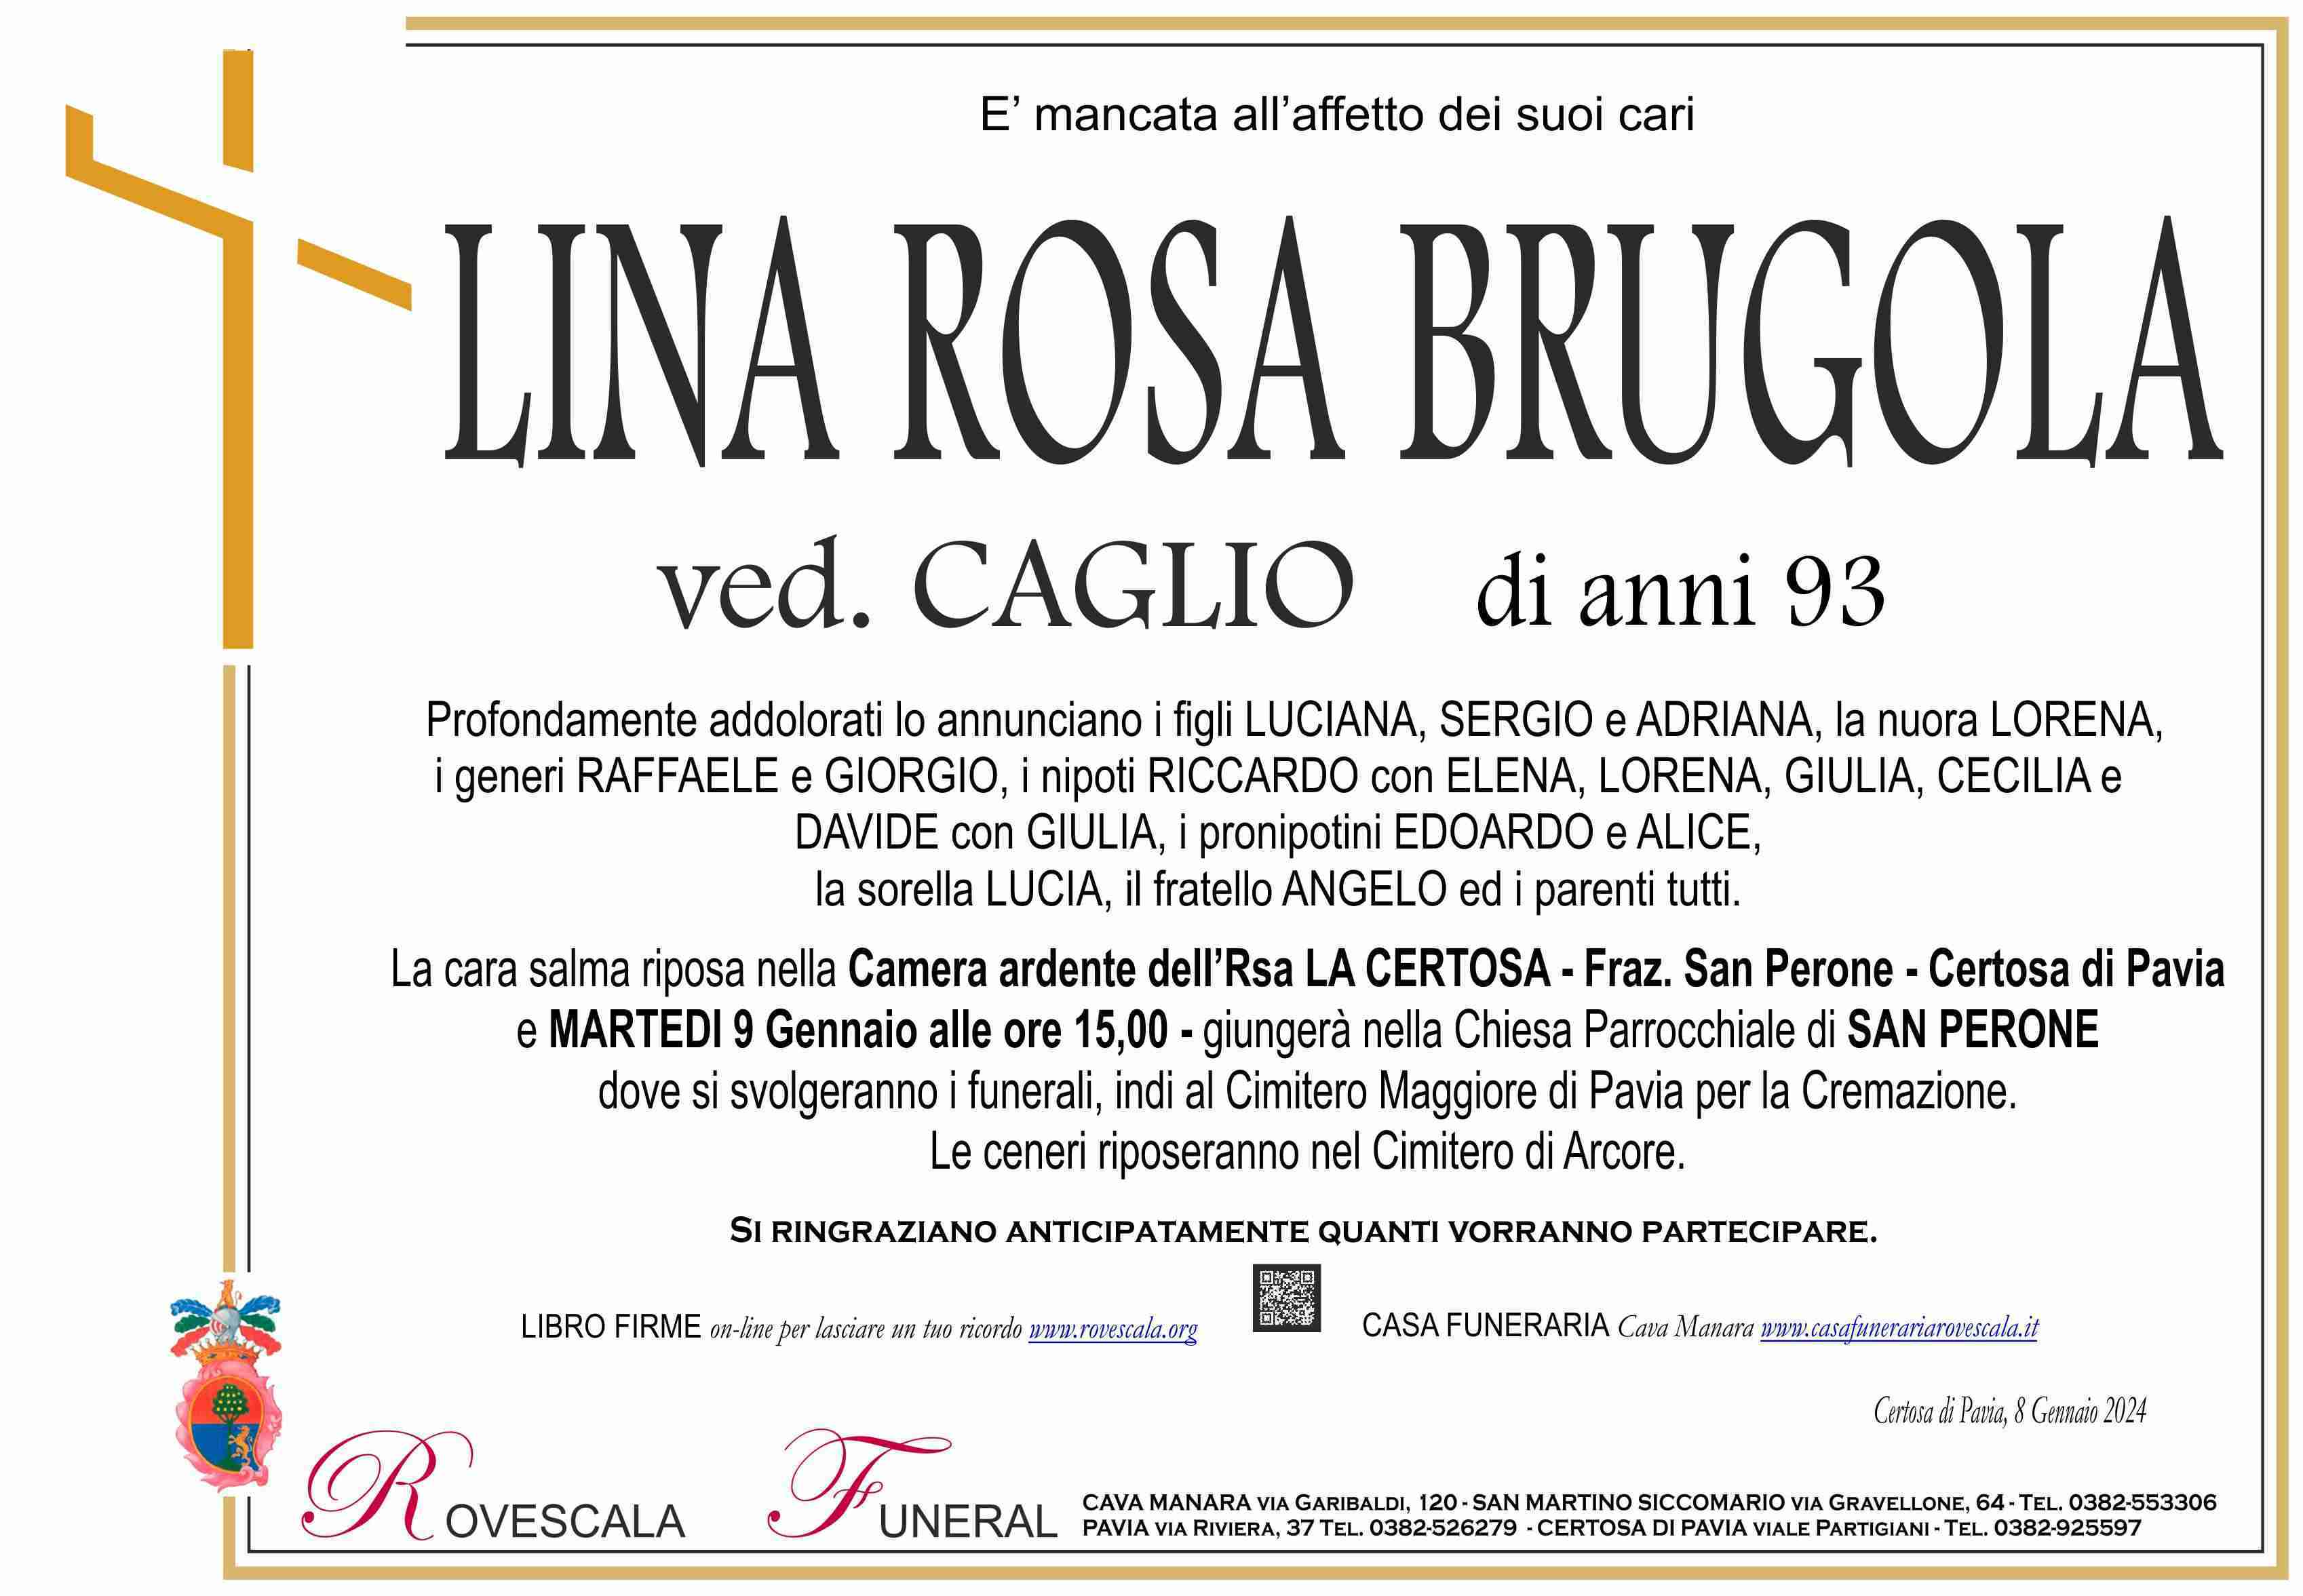 Lina Rosa Brugola